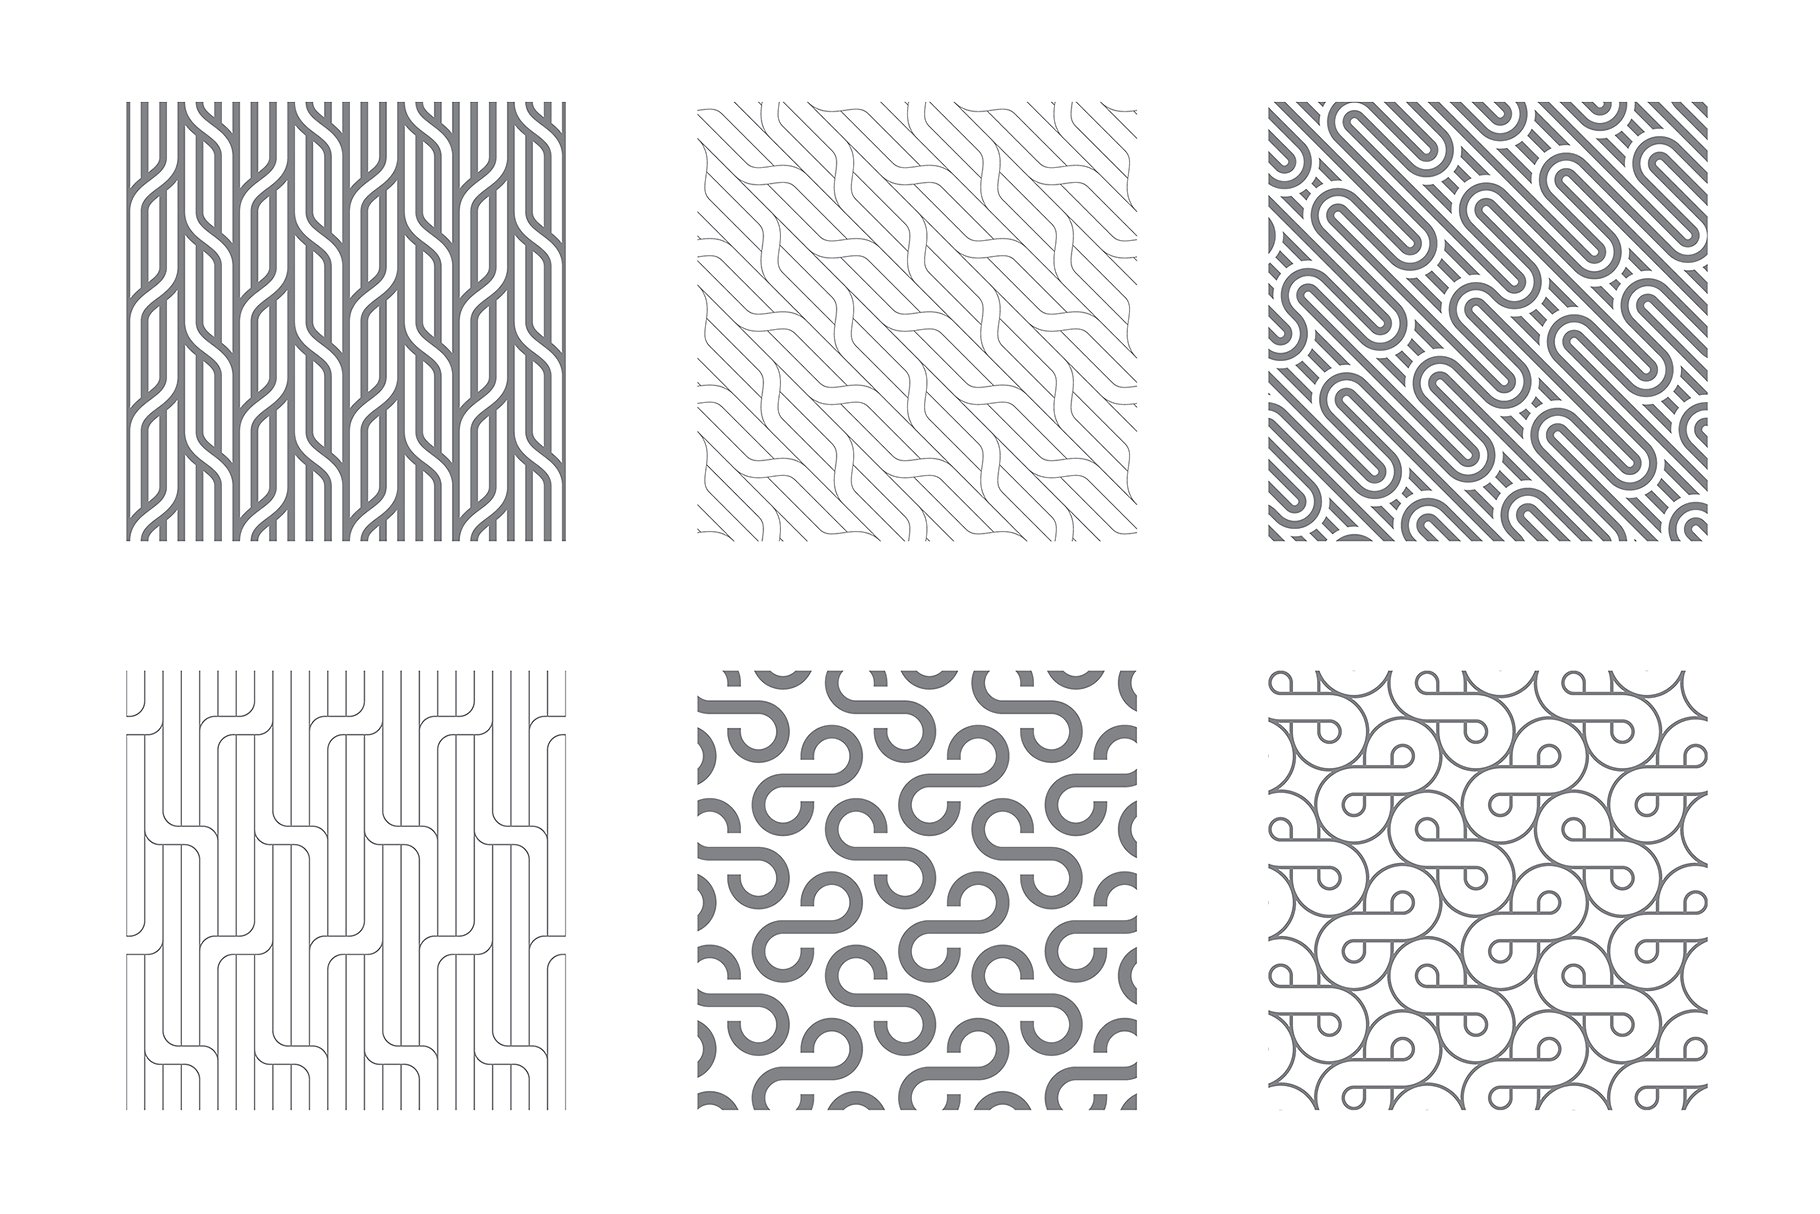 各种波纹无缝纹理图案素材 Rippled Seamless Patterns Bundle v.2插图(1)